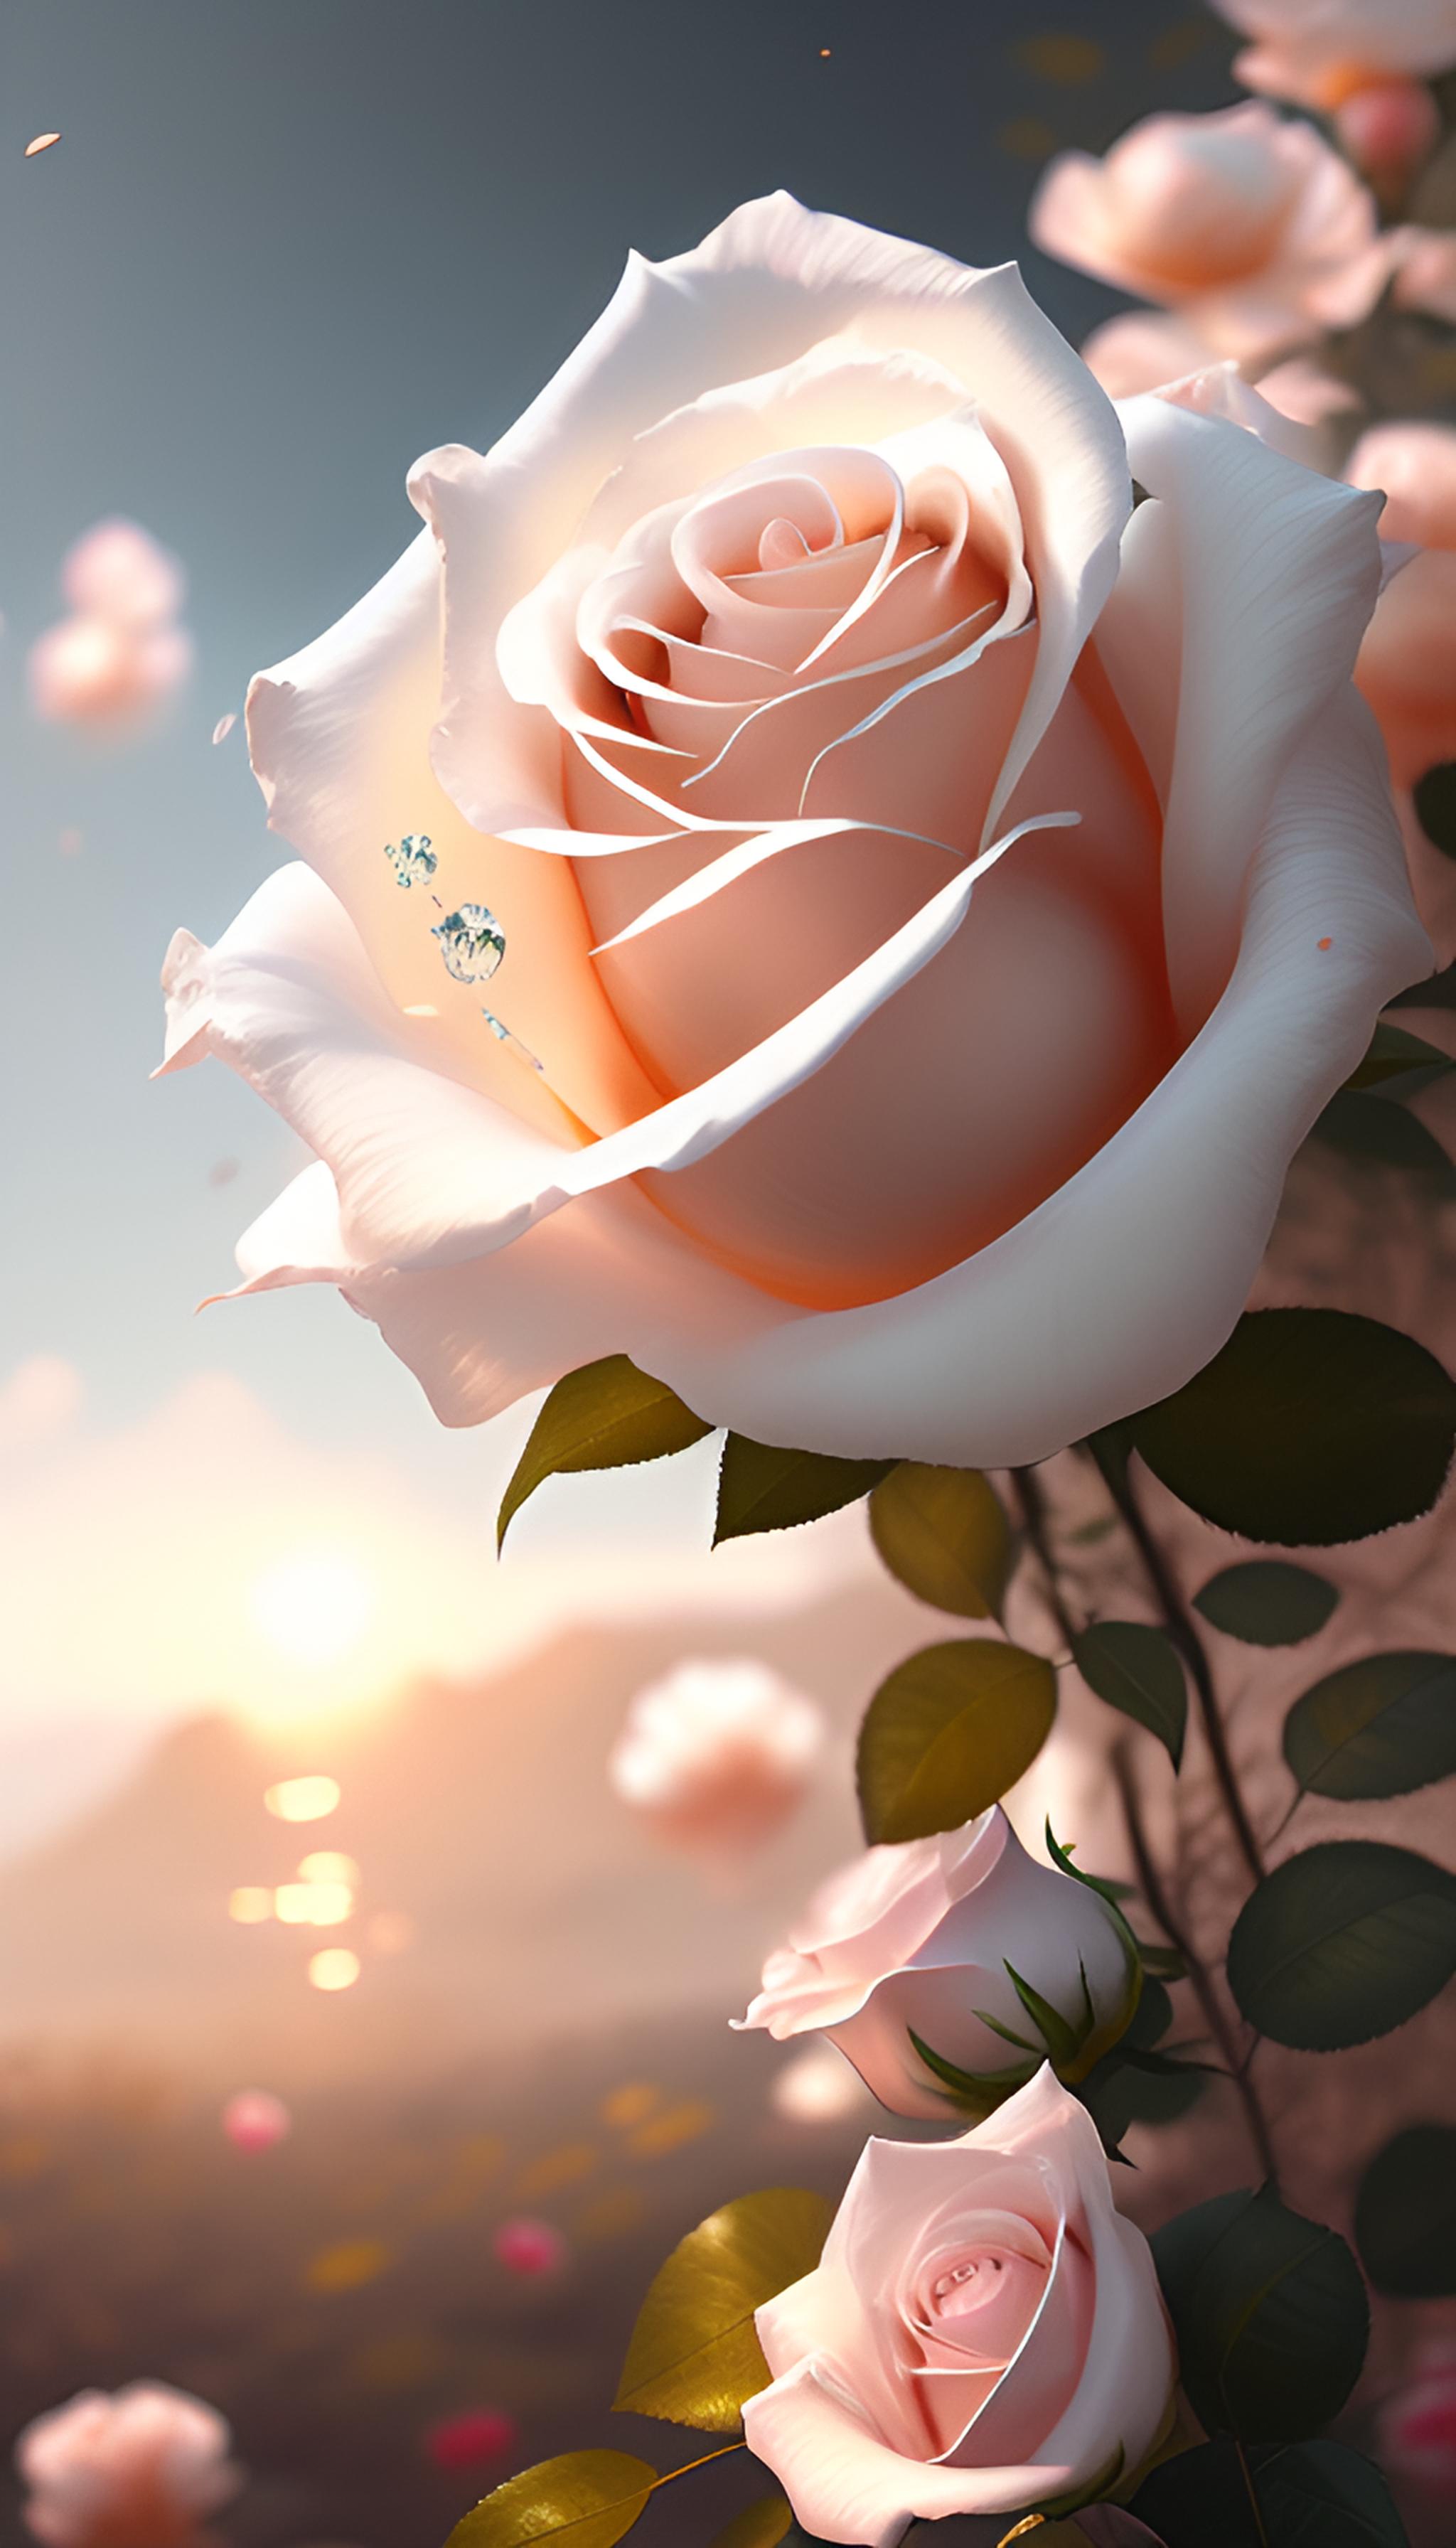 朵白色玫瑰花